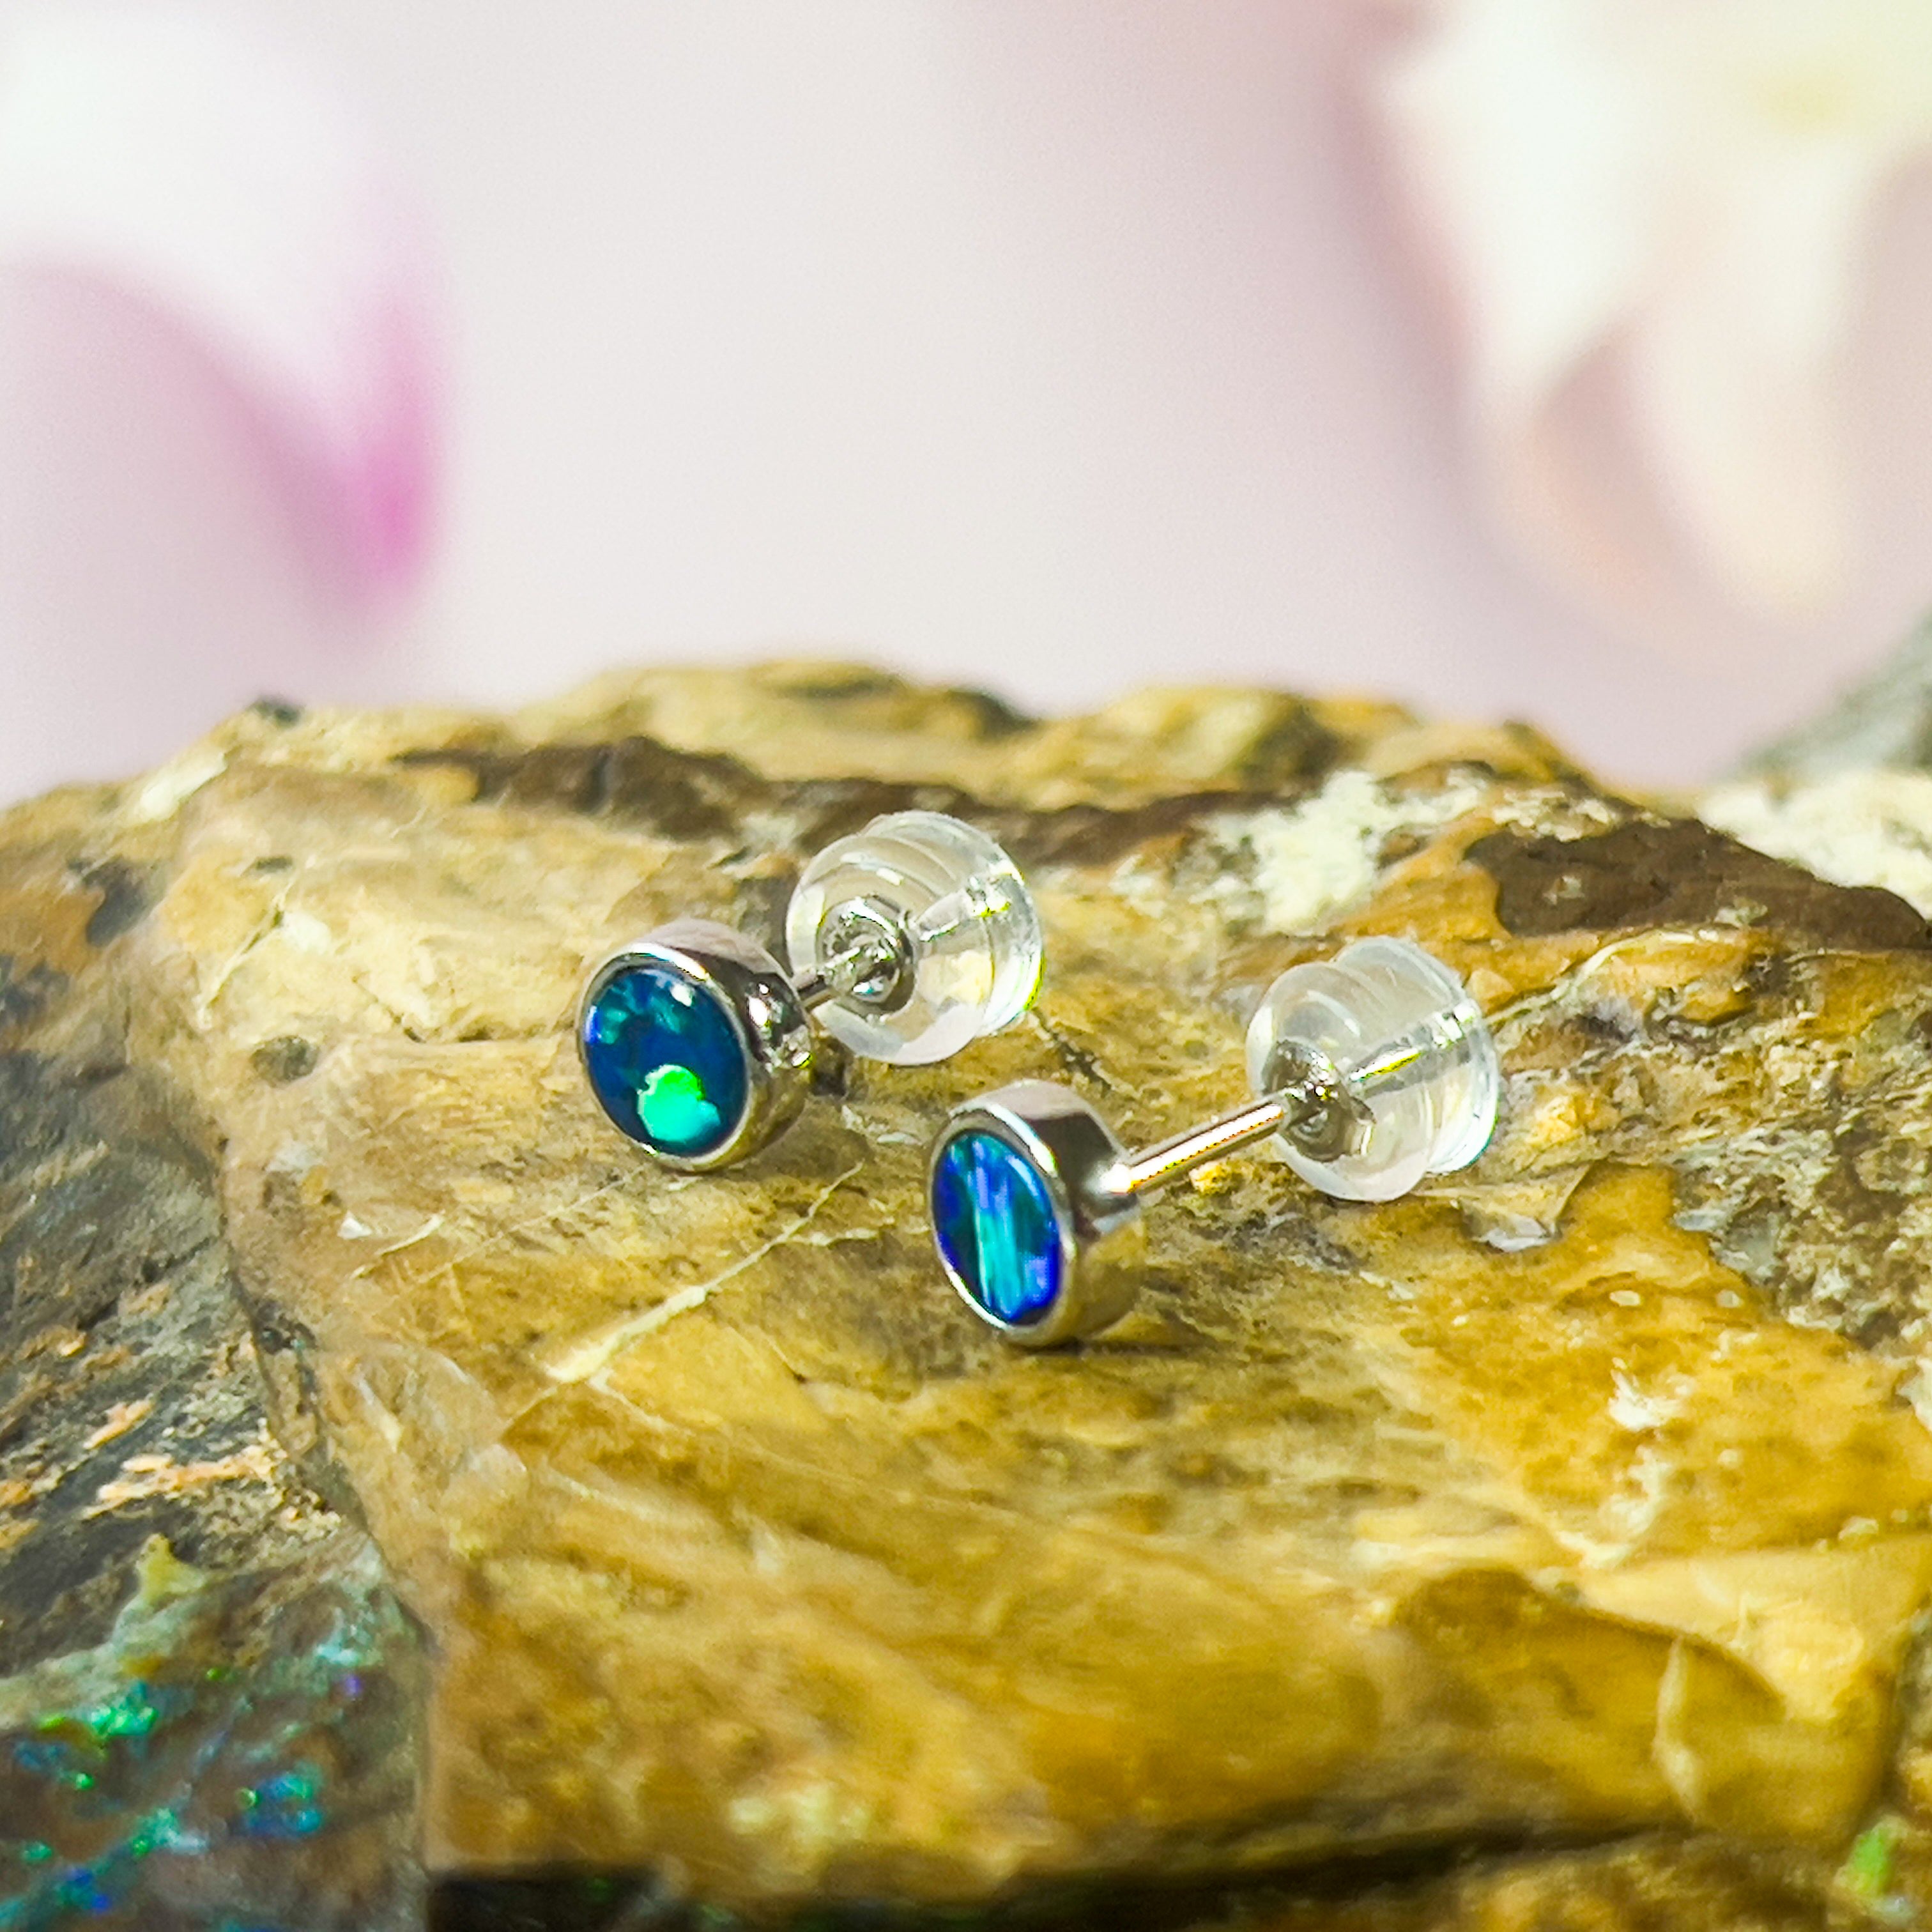 Handmade Opal Stud Earrings - Gold/Silver | Dainty & Cute | Crystal Fire Opal Jewelry | Gift for Her 3mm - Masterpiece Jewellery Opal & Gems Sydney Australia | Online Shop